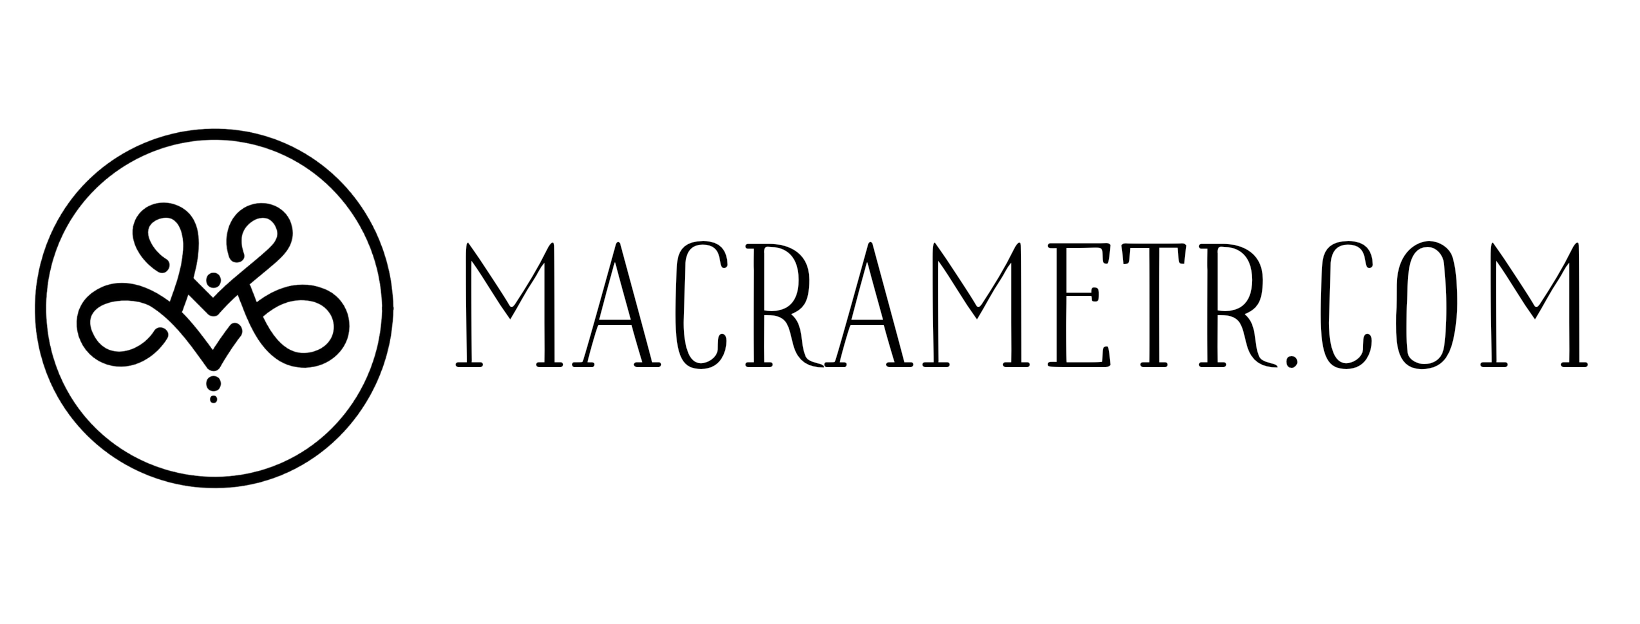 macrametr.com - магазин товаров для макраме